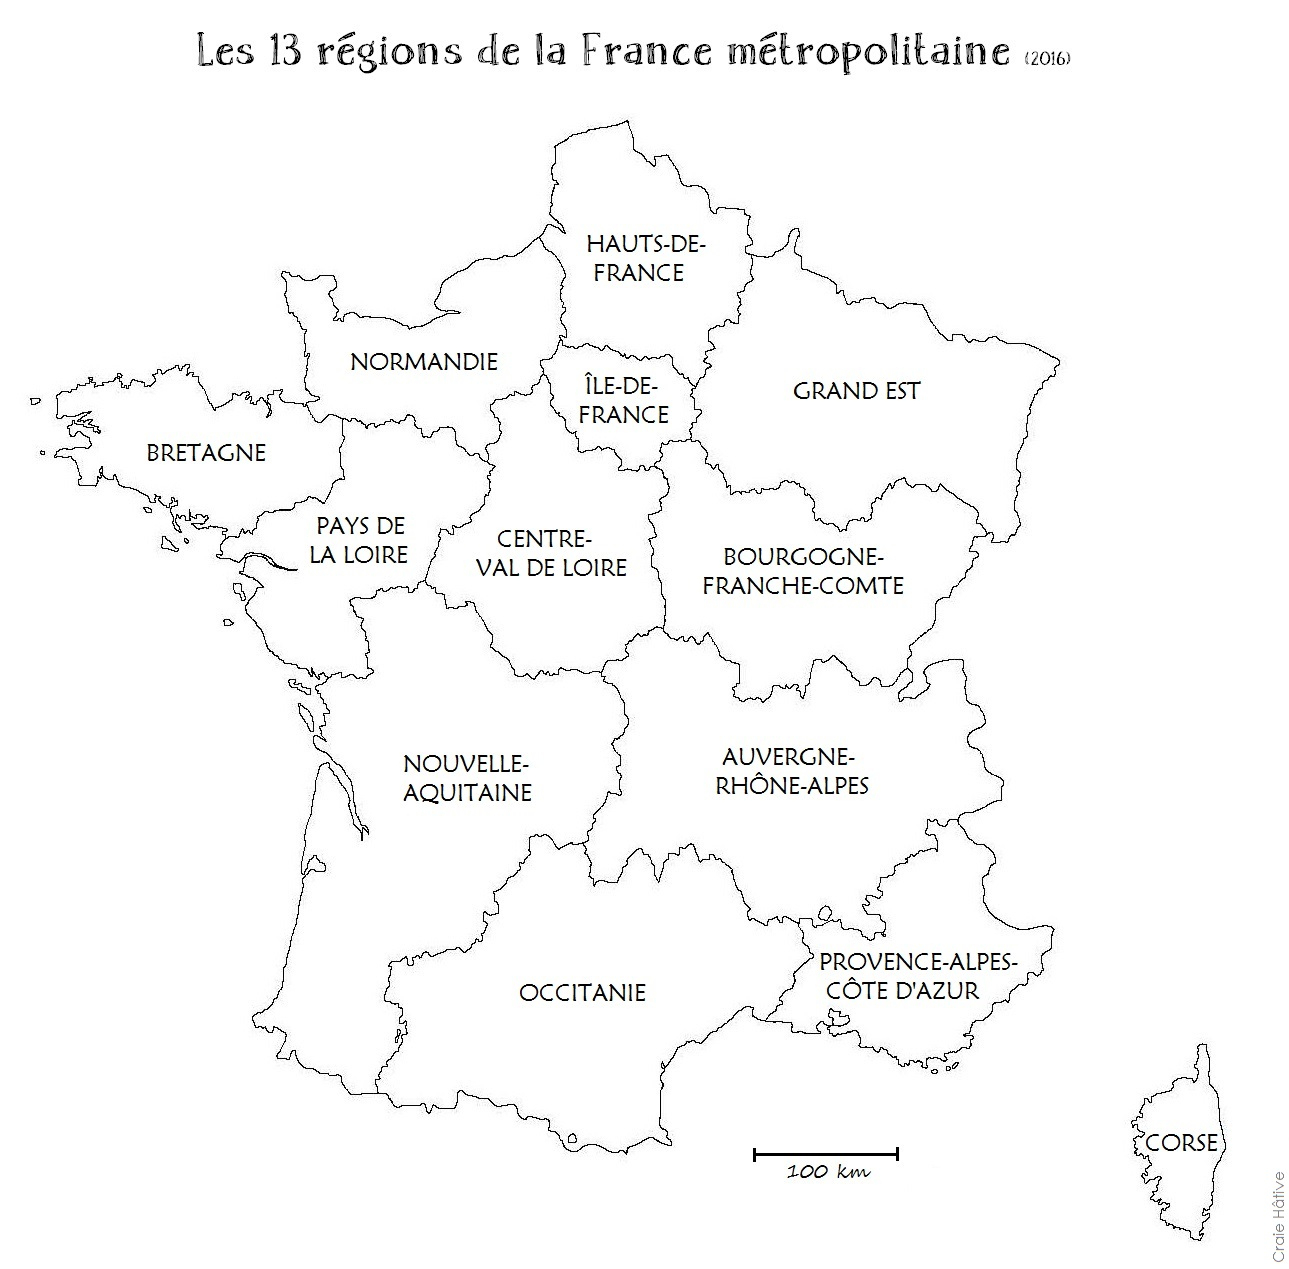 Carte France Région Et Département - Altoservices intérieur Fond De Carte Rã©Gions France Eduscol 